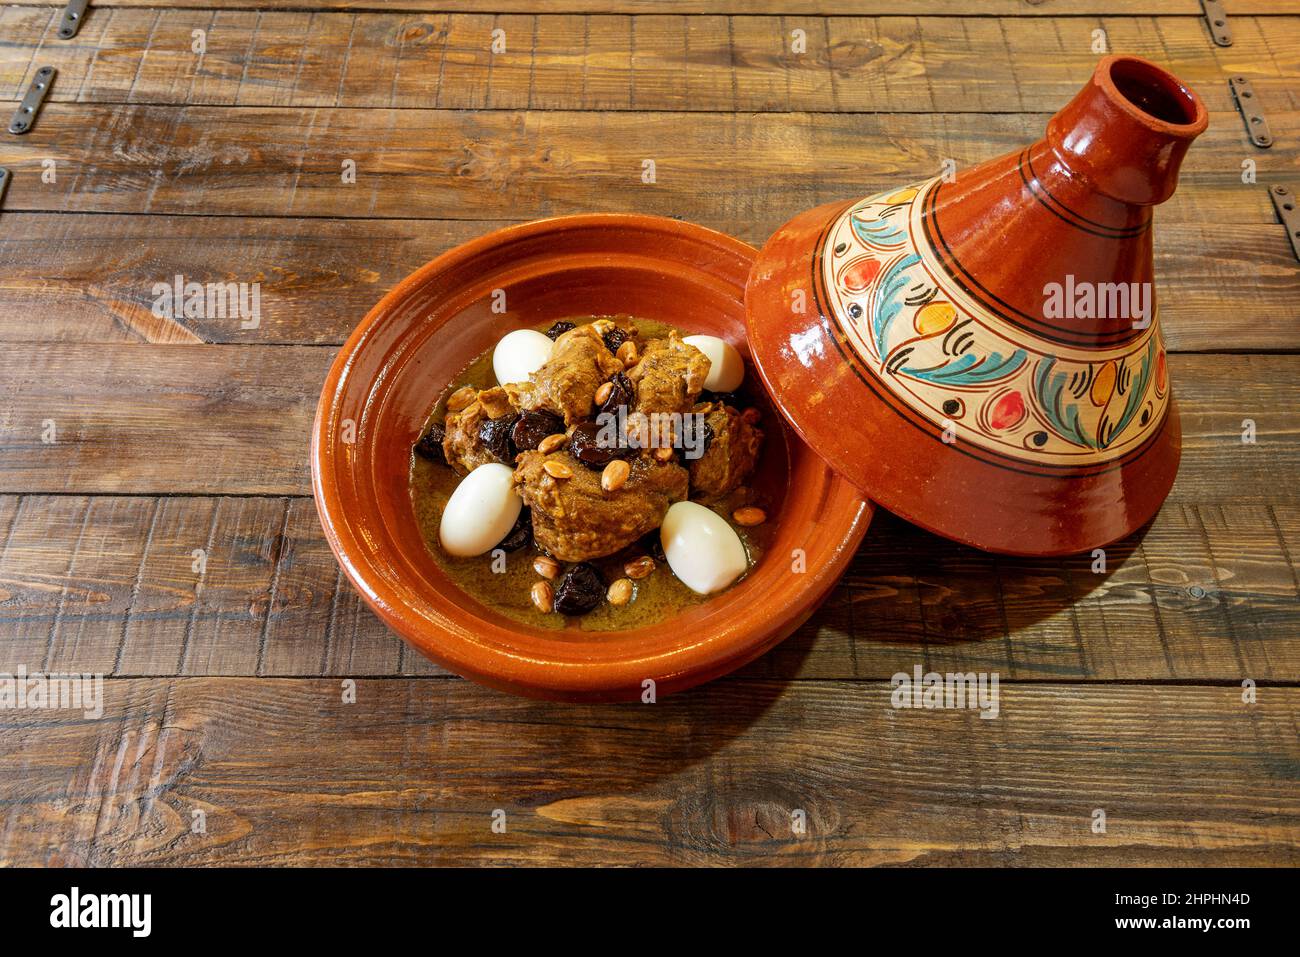 La tagine, per la sua pronuncia, è un piatto tradizionale della cucina arabo-berbera di origine berbera che porta il nome del vaso di argilla in cui è Foto Stock